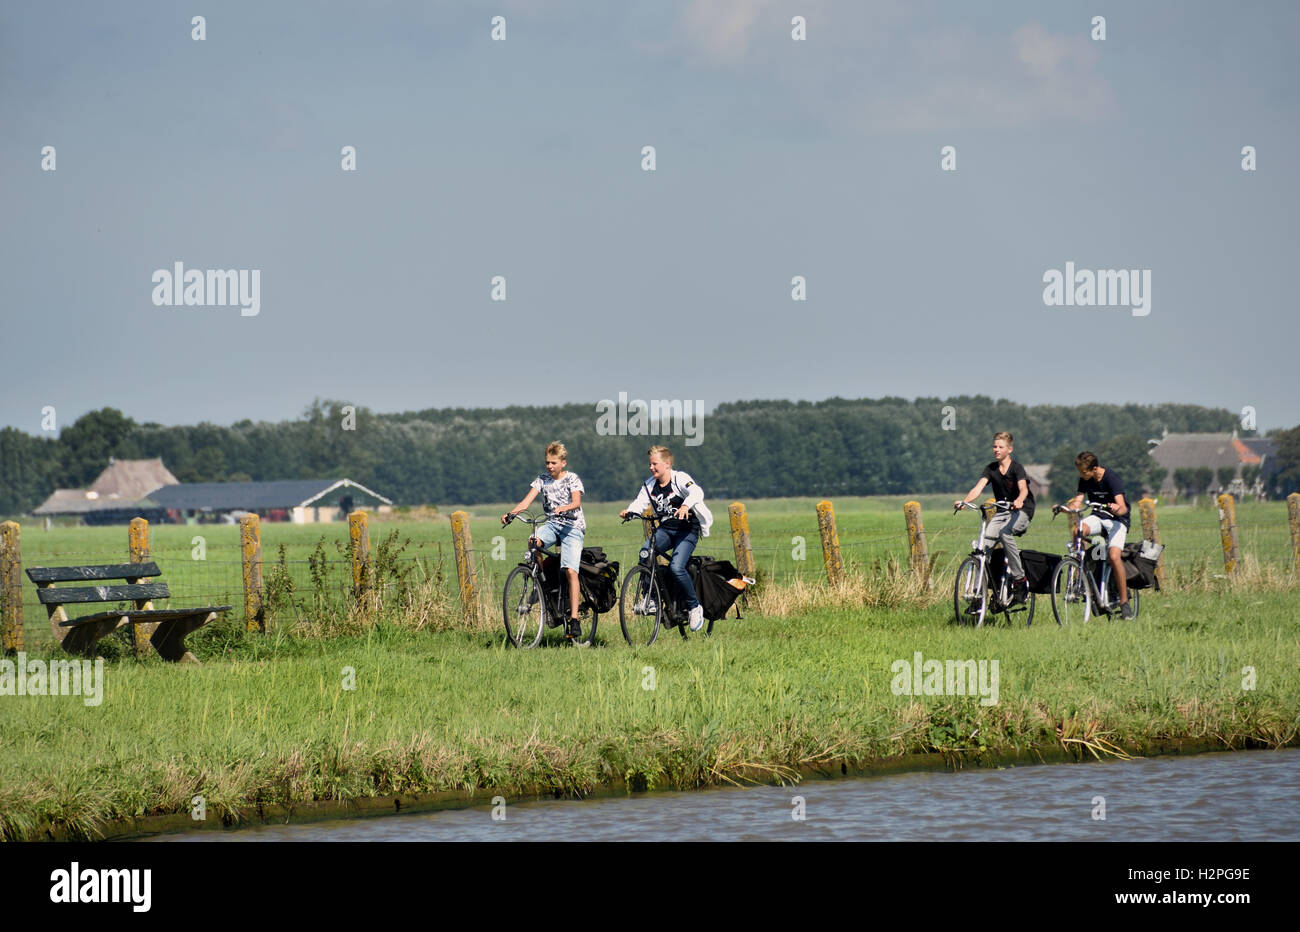 Garçon de l'école vtt la paysage agricole frise Fryslan Pays-Bas Banque D'Images